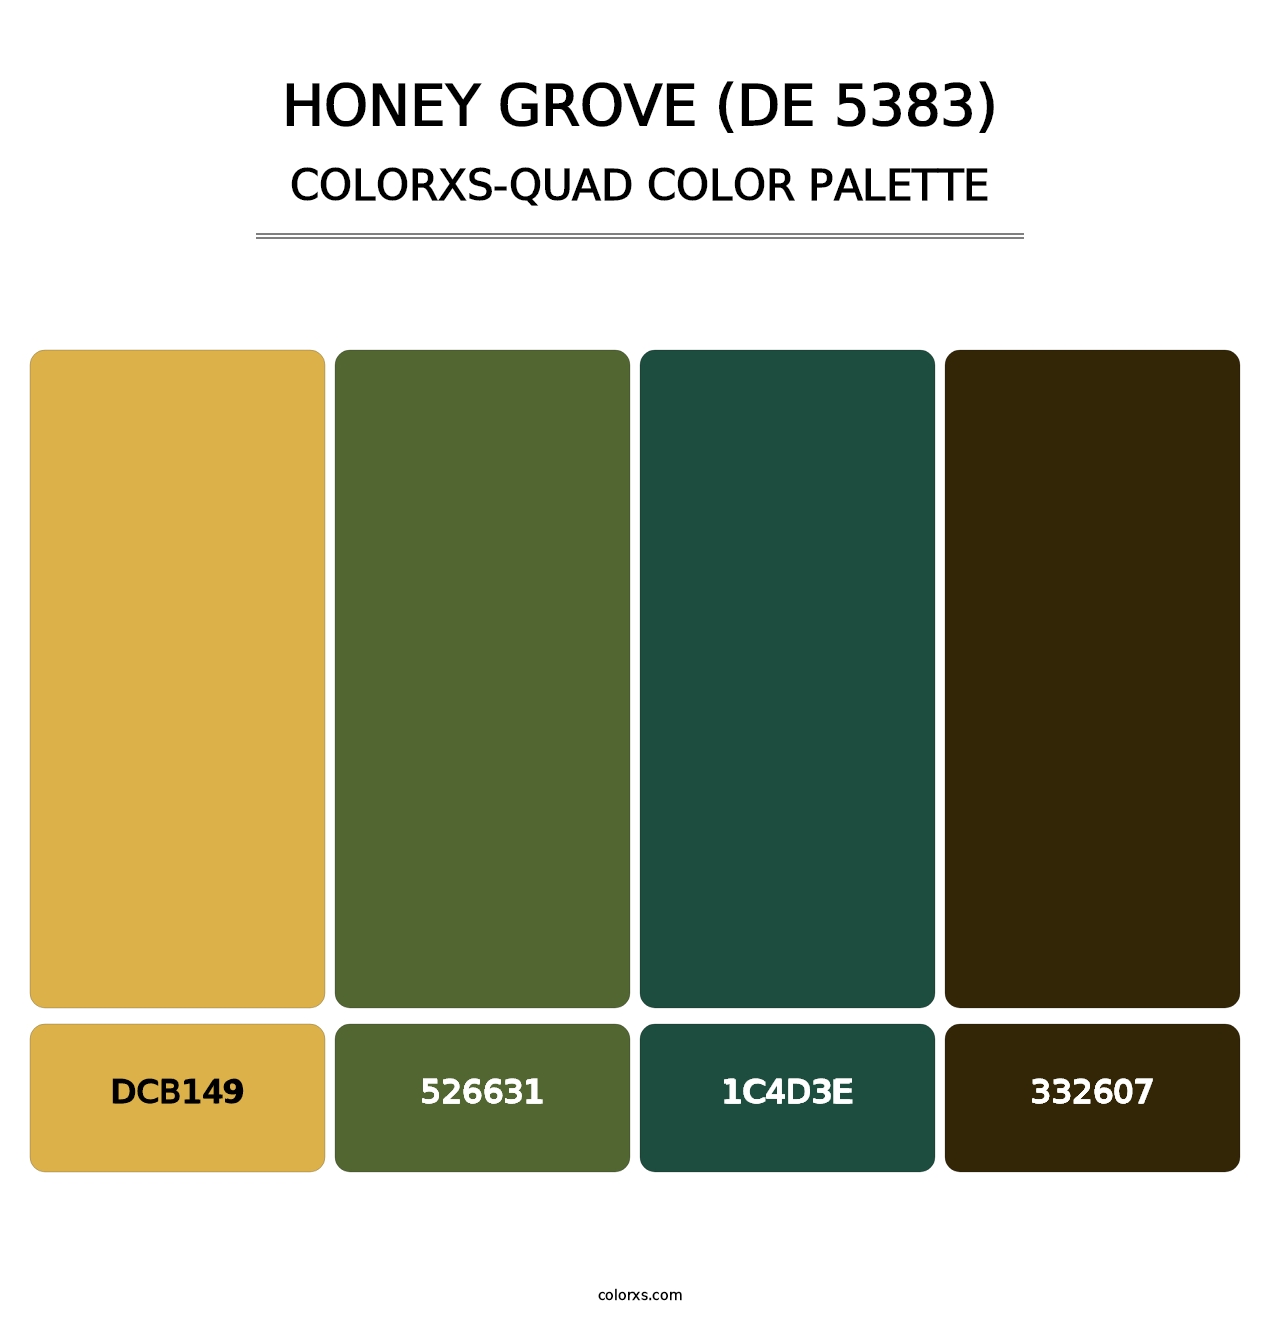 Honey Grove (DE 5383) - Colorxs Quad Palette